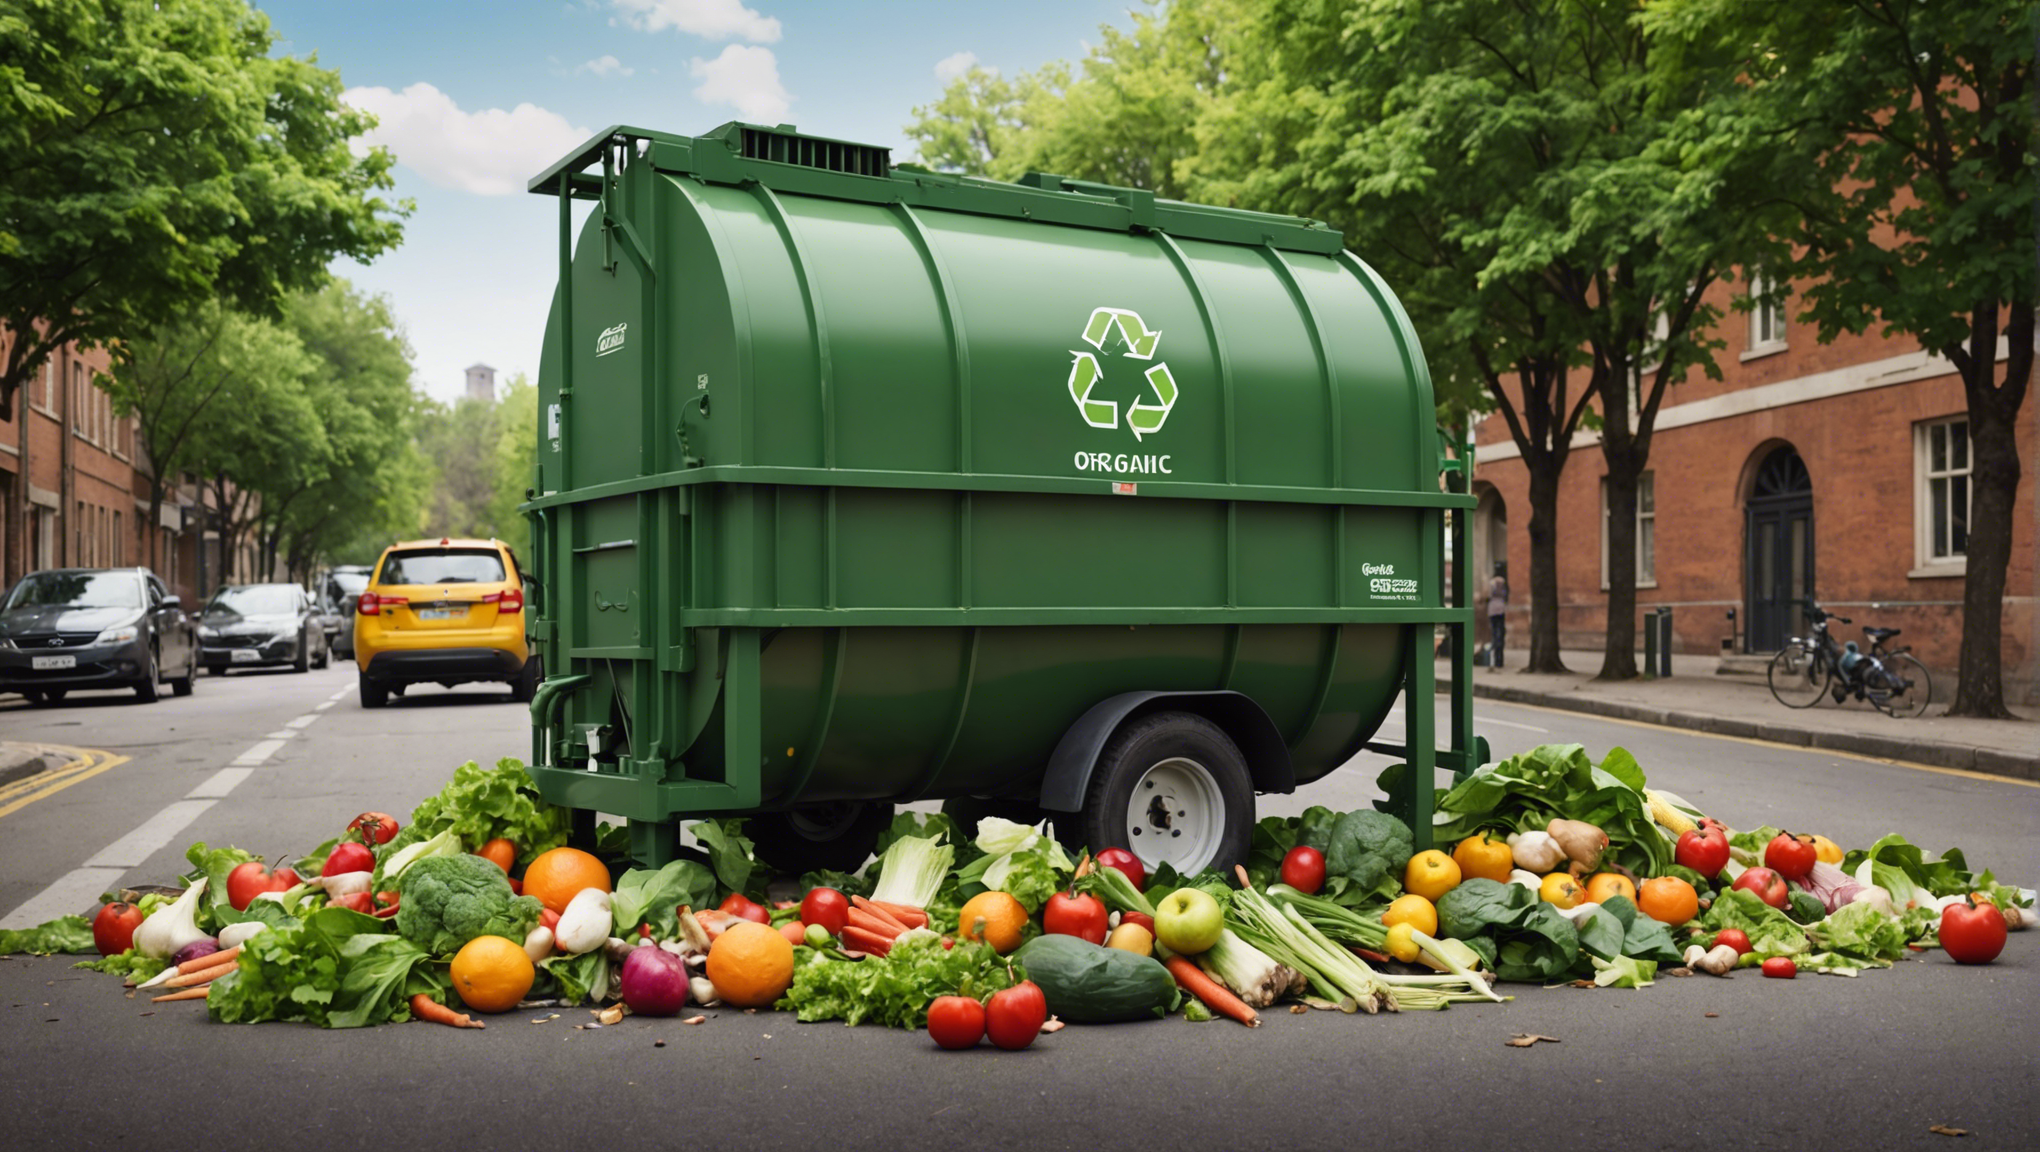 découvrez comment donner une seconde vie à vos déchets organiques en les transformant en ressources précieuses. conseils, astuces et solutions pour un compostage réussi.